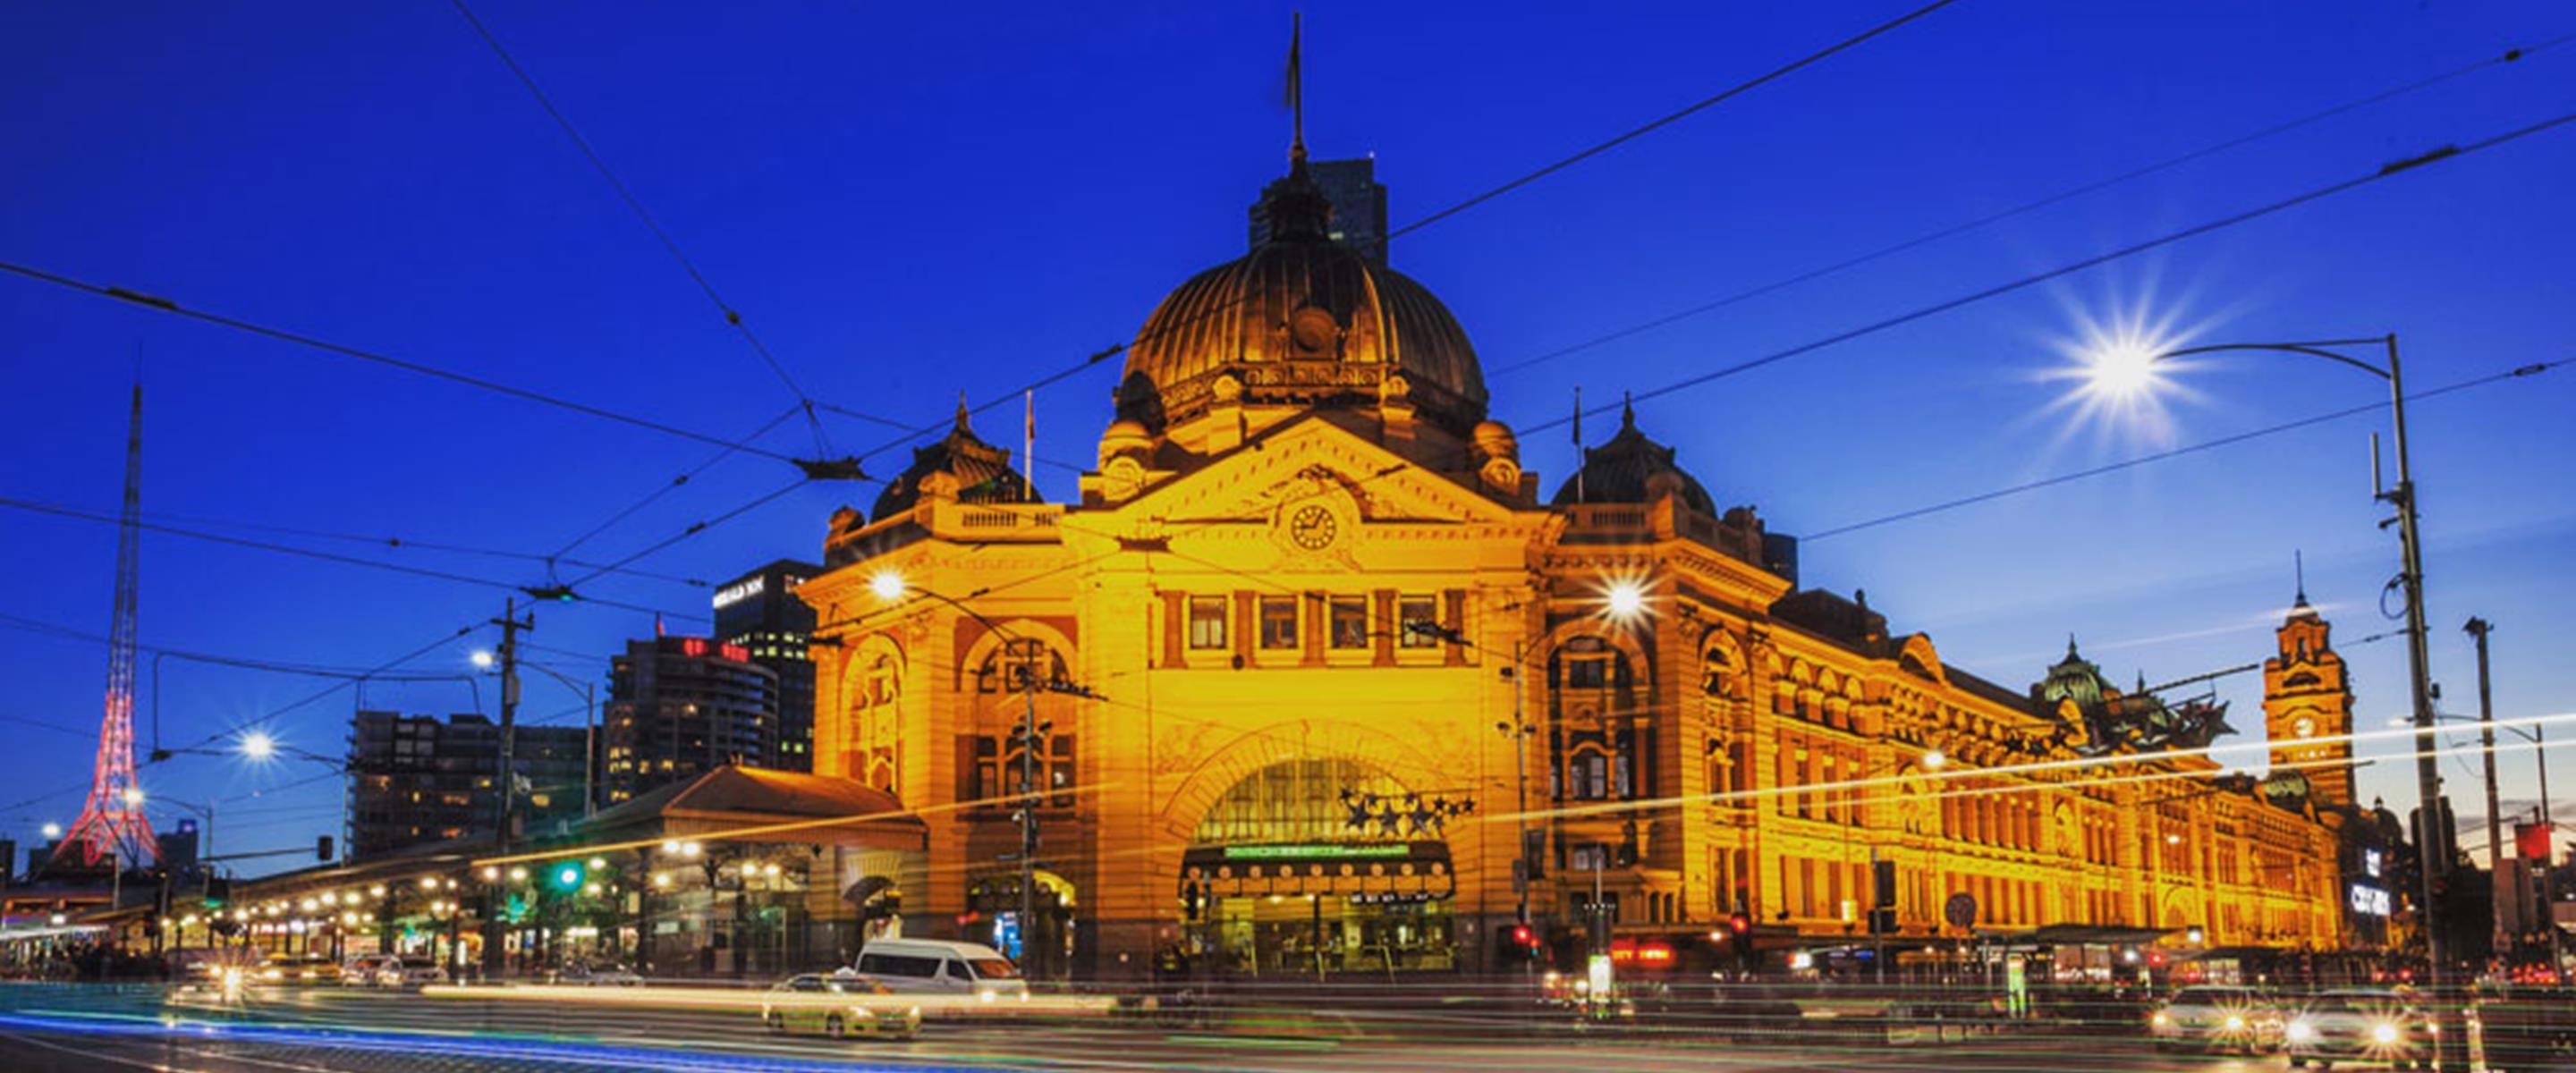 Flinders Station in Melbourne CBD